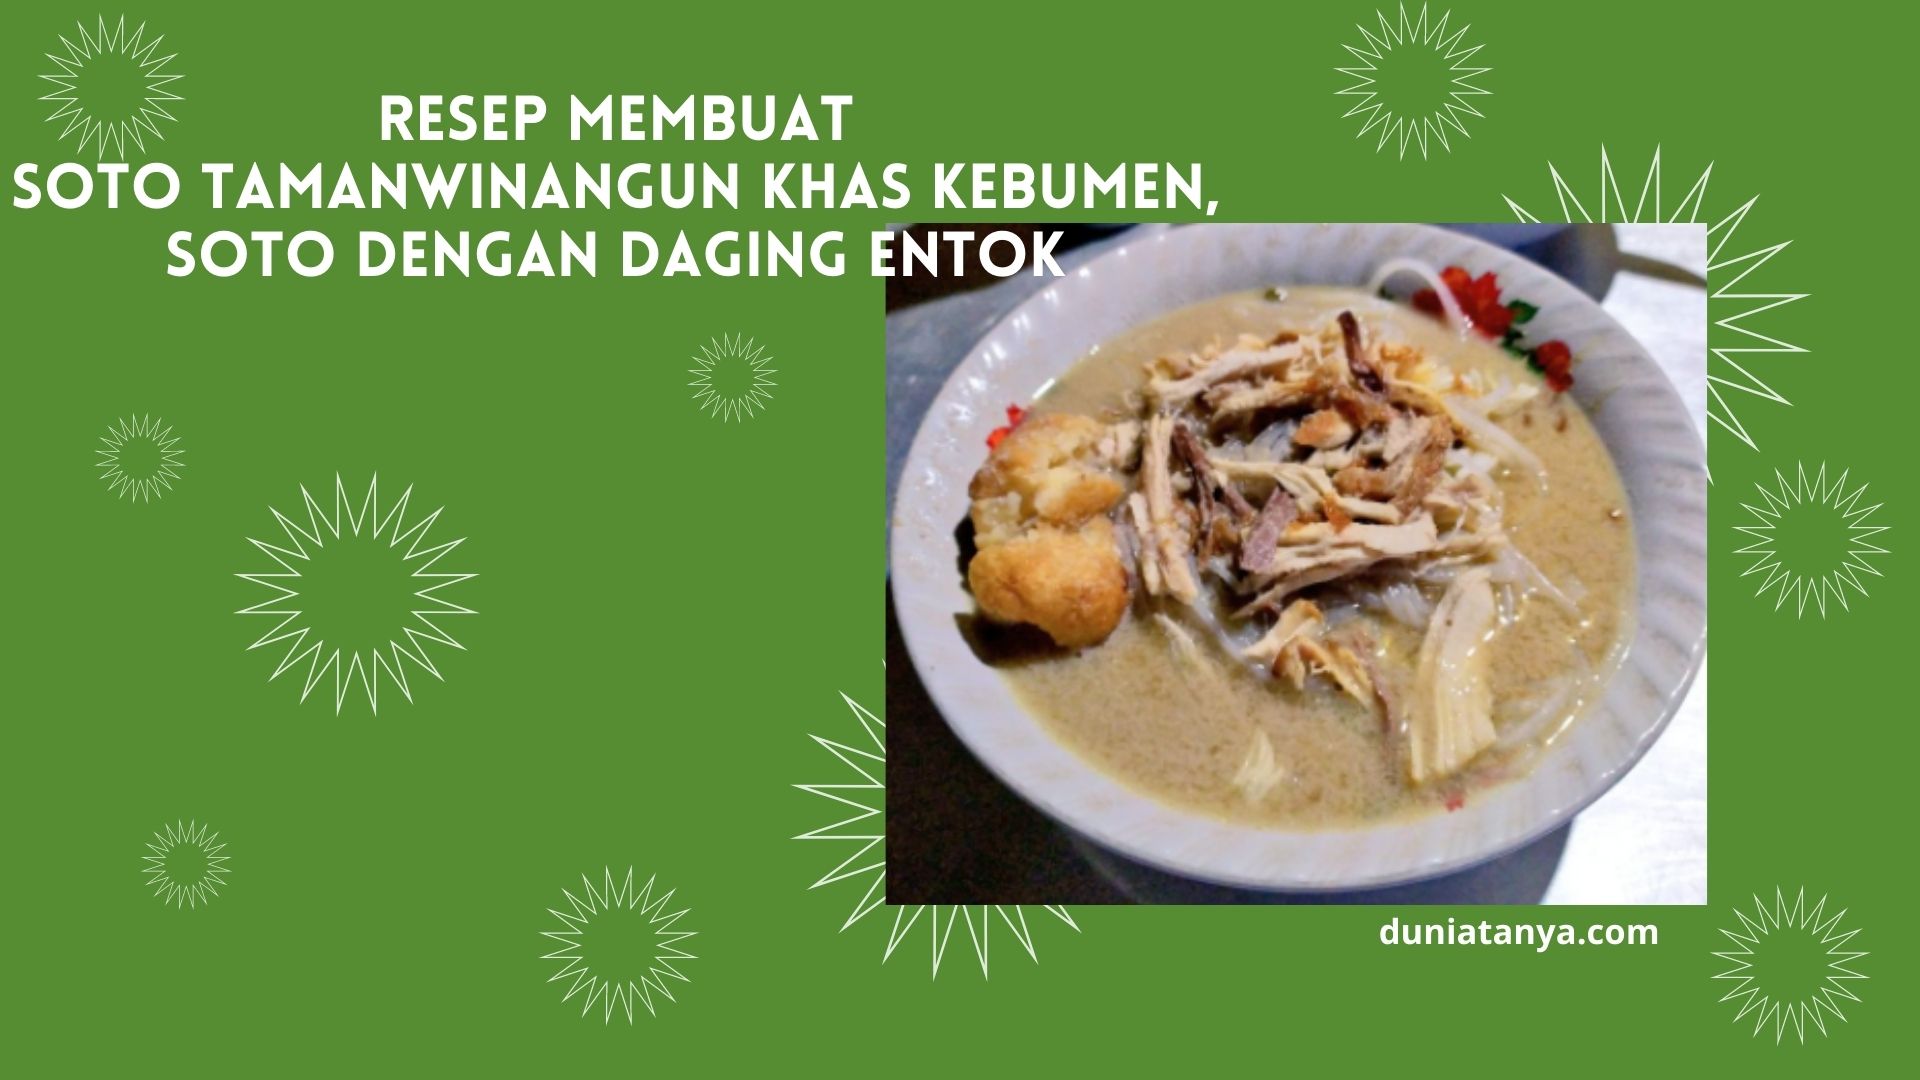 You are currently viewing Resep Membuat Soto Tamanwinangun Khas Kebumen,Soto Dengan Daging Entok